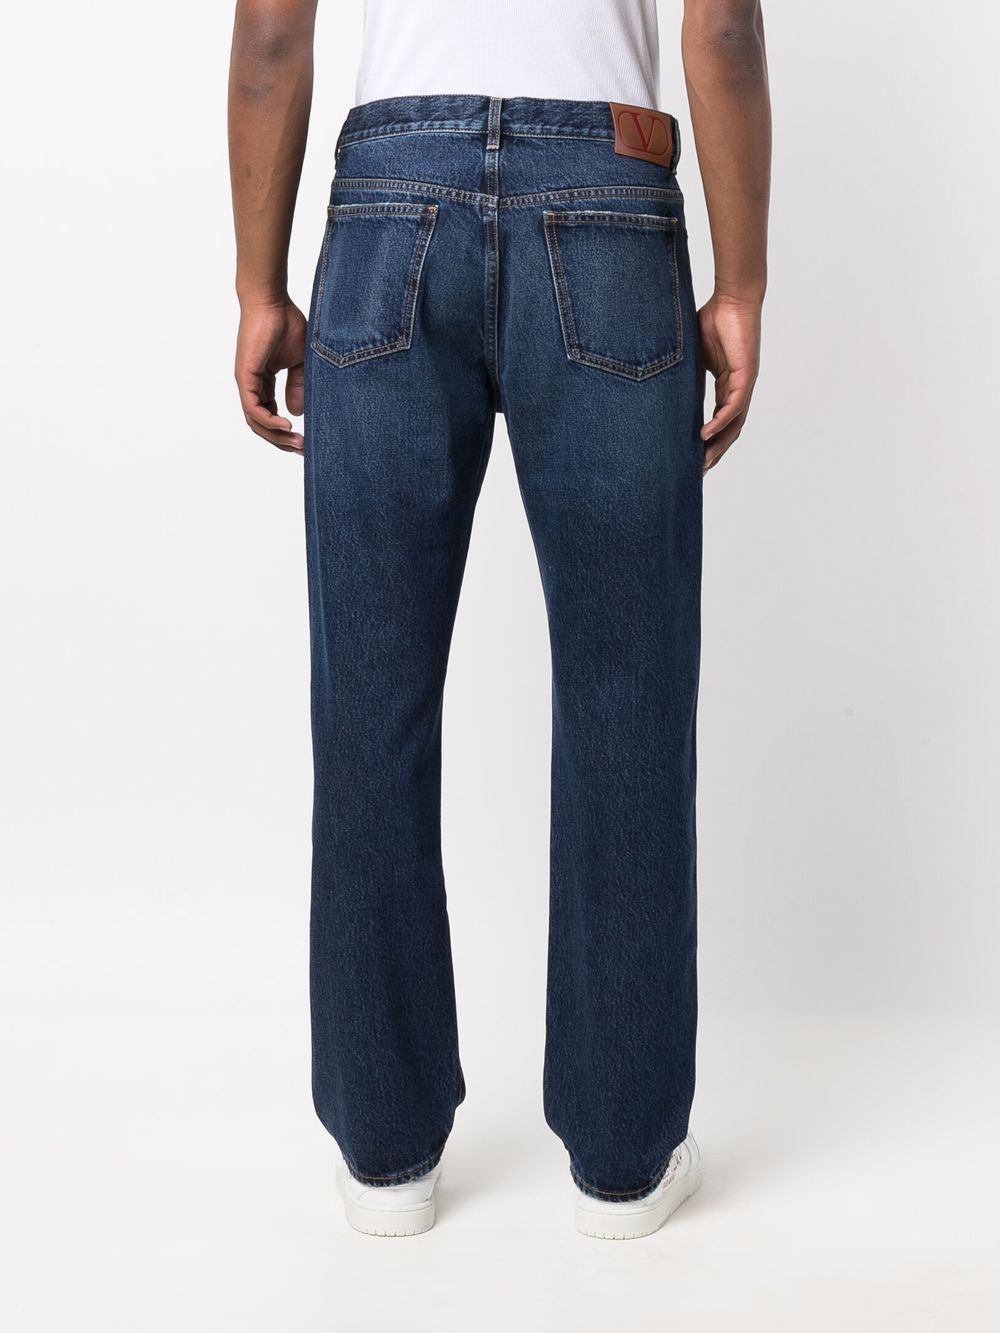 фото Valentino прямые джинсы